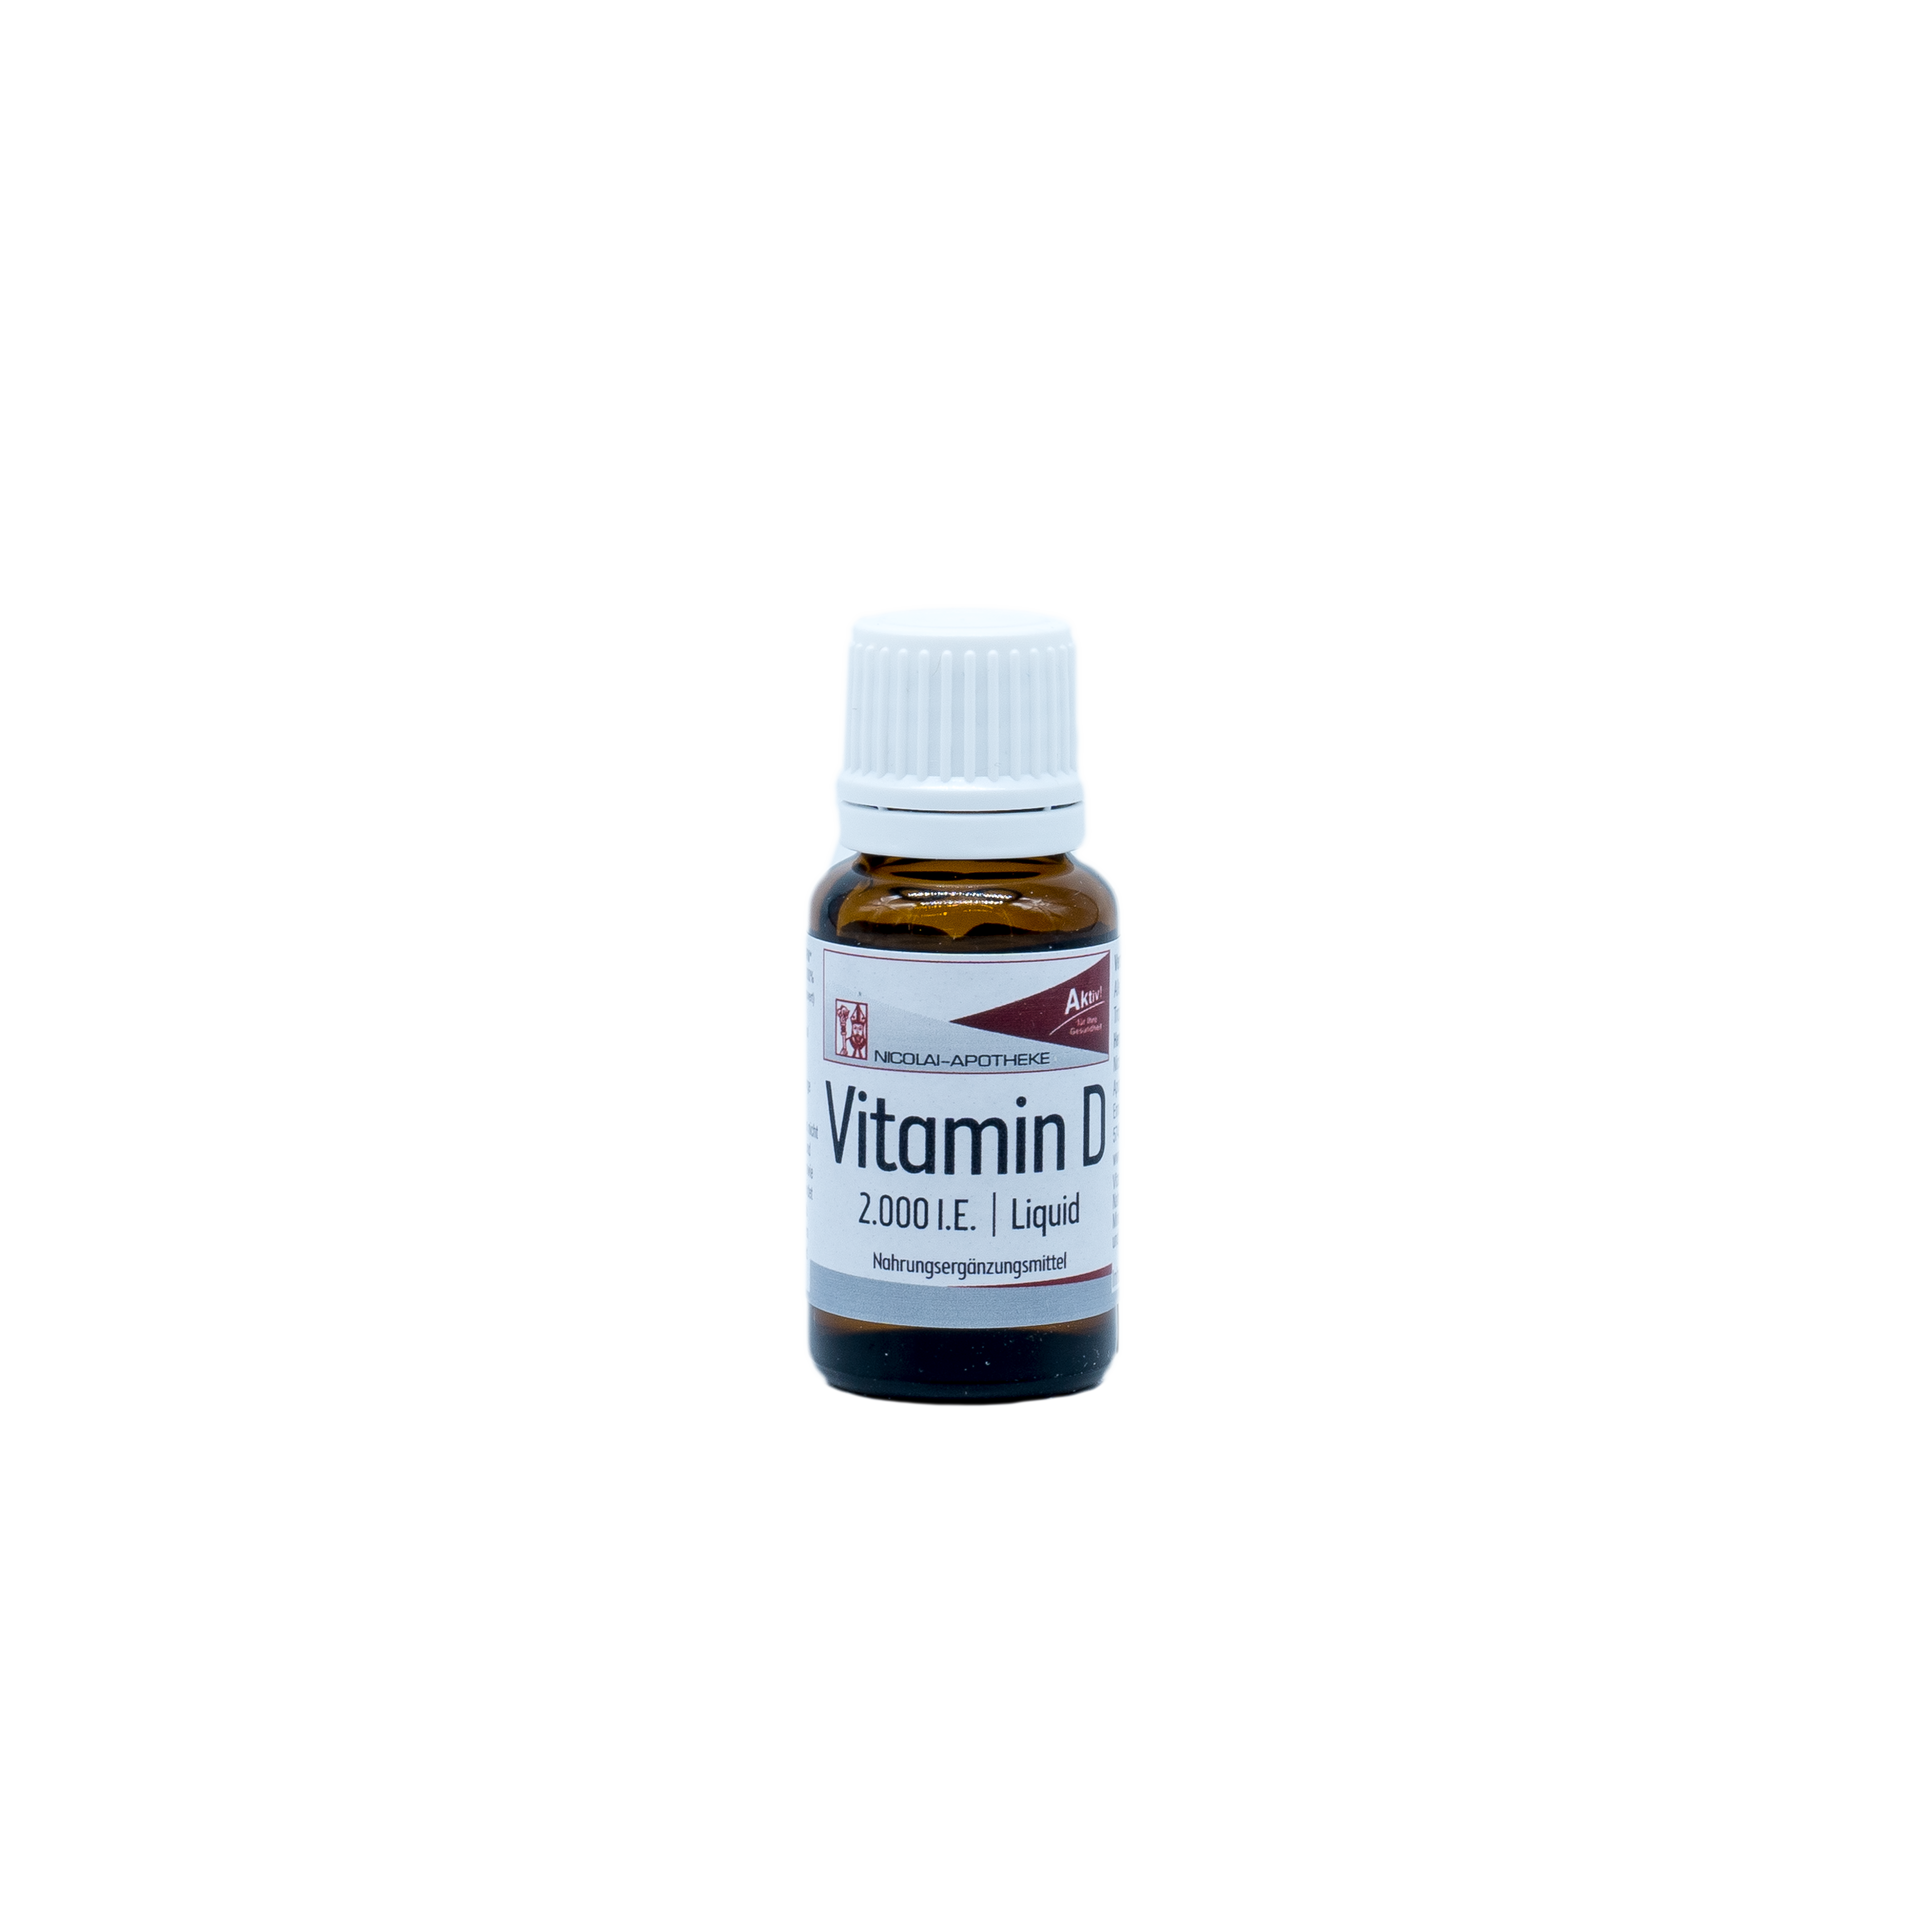 Vitamin D3 2000I.E. Liquid